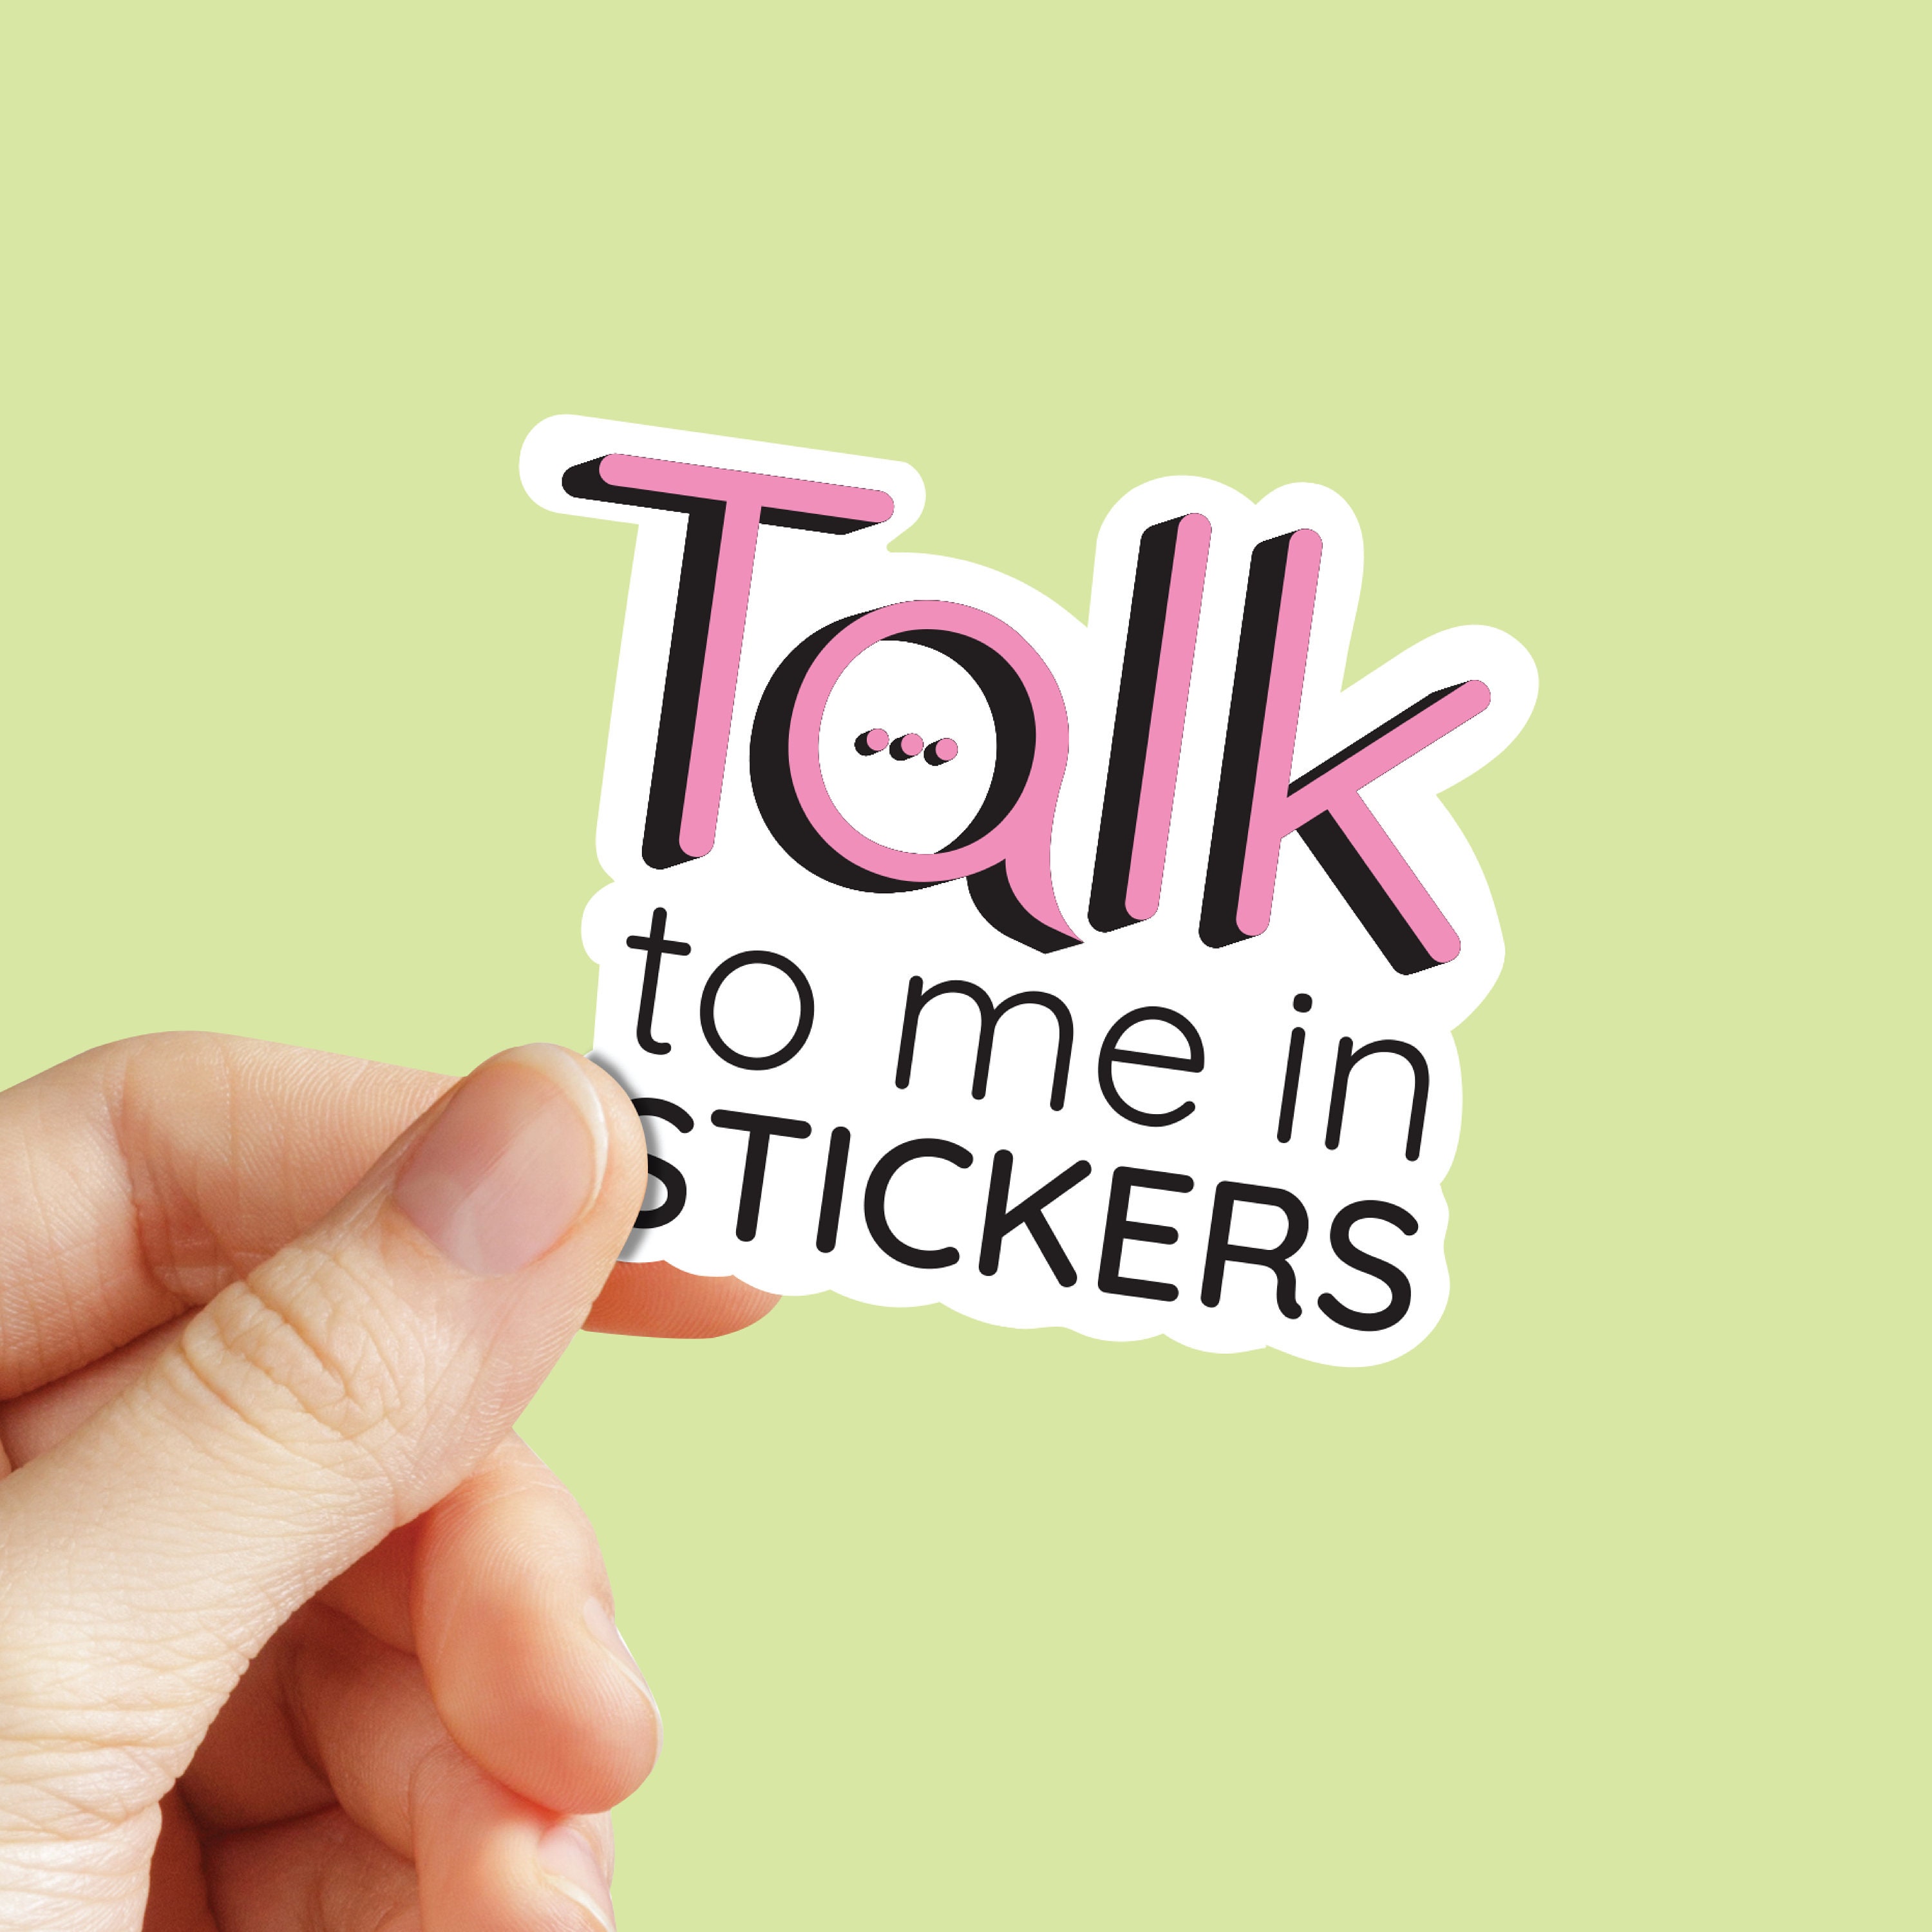 Large Talk Bubble Stickers Cartoon Speech Bubble Stickers 